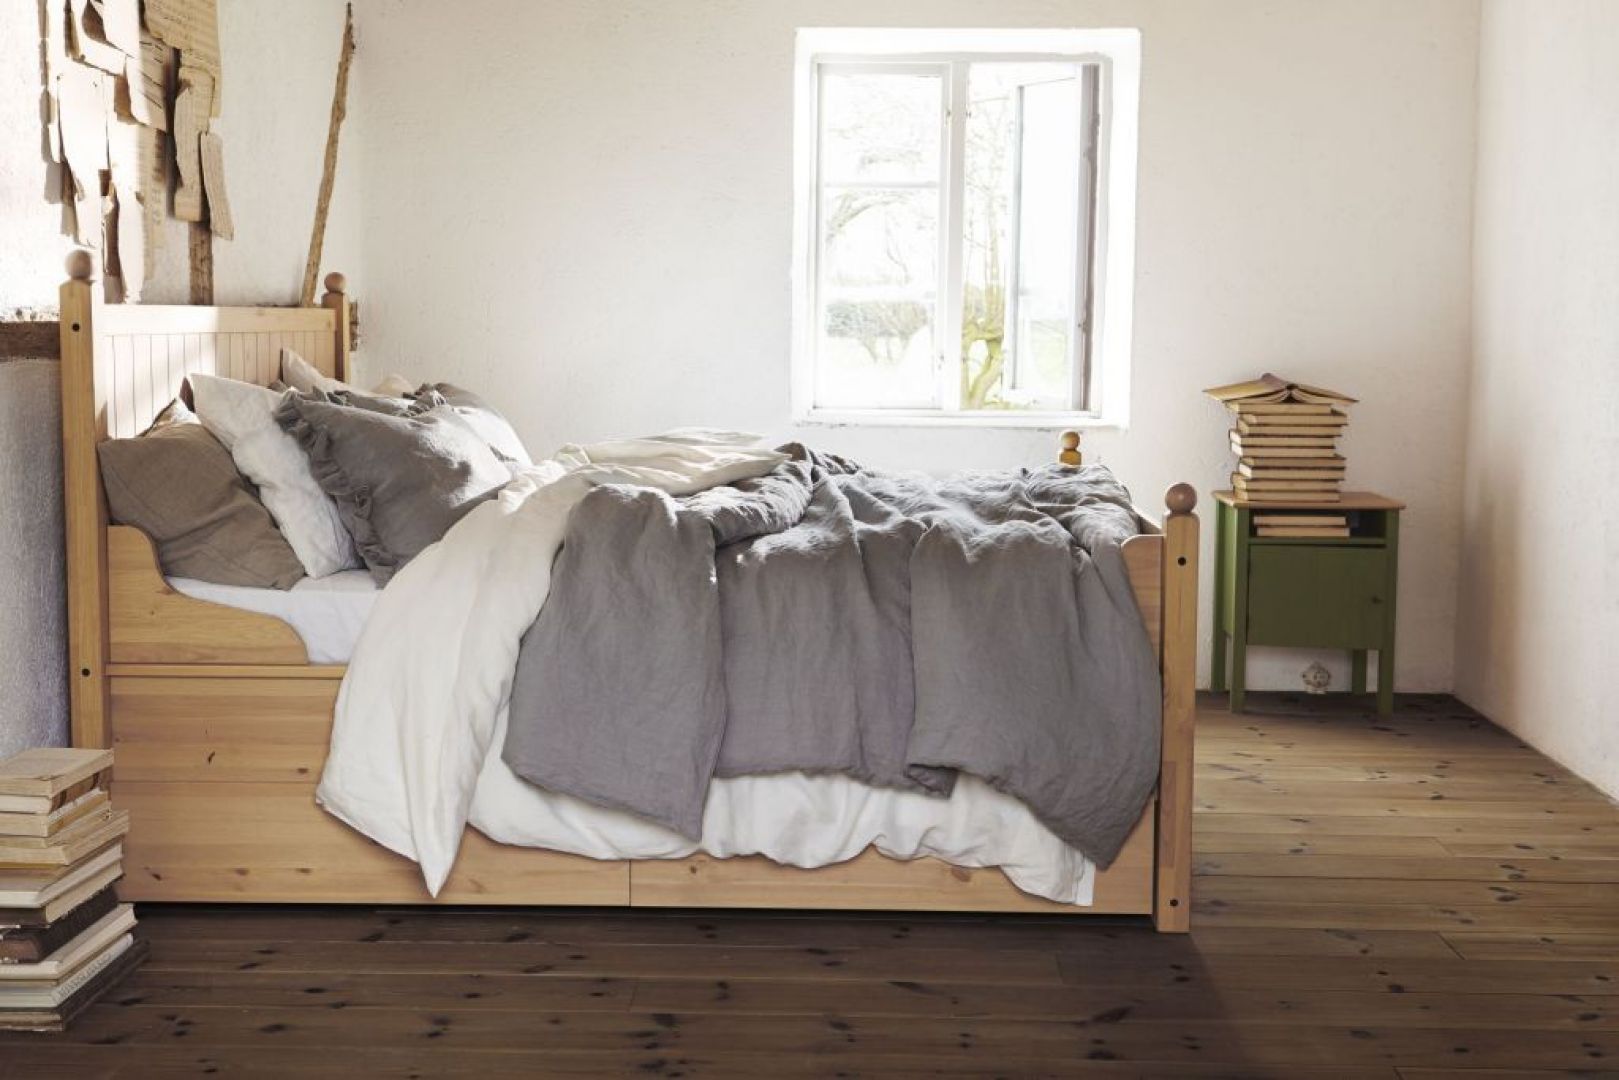 Łóżko z serii Hurdal wykonane jest z litego drewna. Ma piękny, naturalny klimat i do sypialni w takim stylu również pasuje. Fot. IKEA